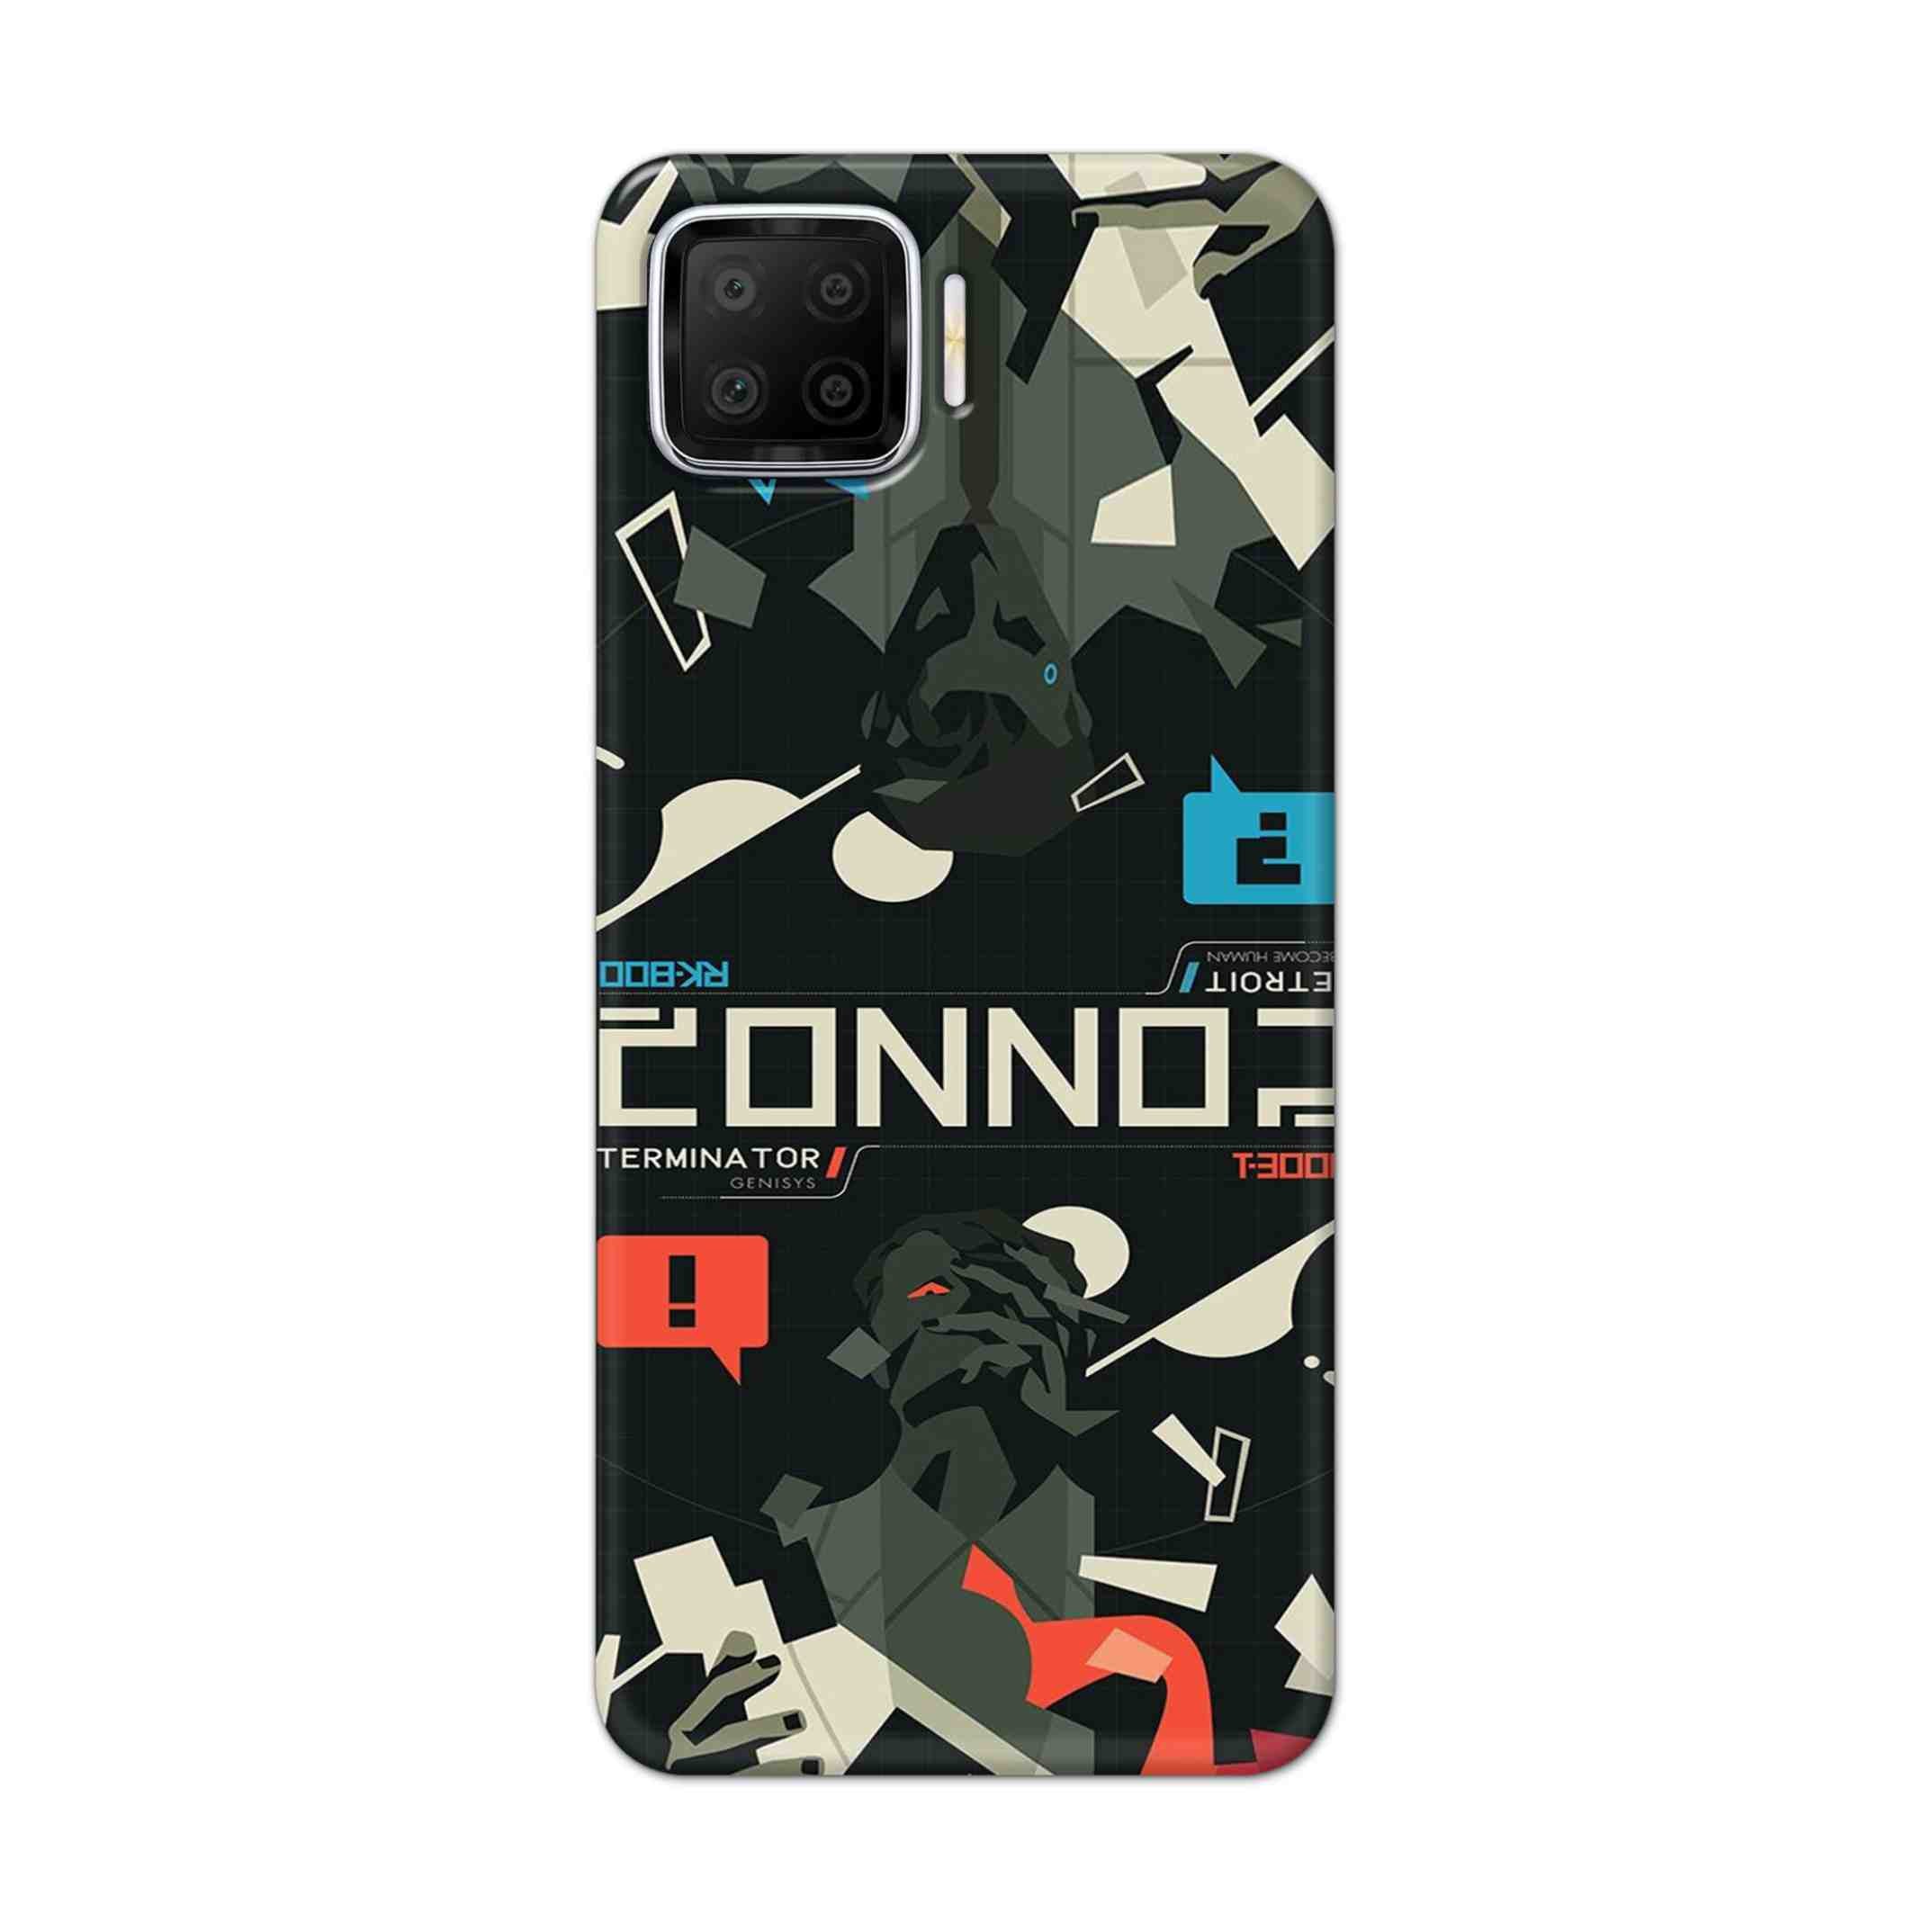 Buy Terminator Hard Back Mobile Phone Case Cover For Oppo F17 Online